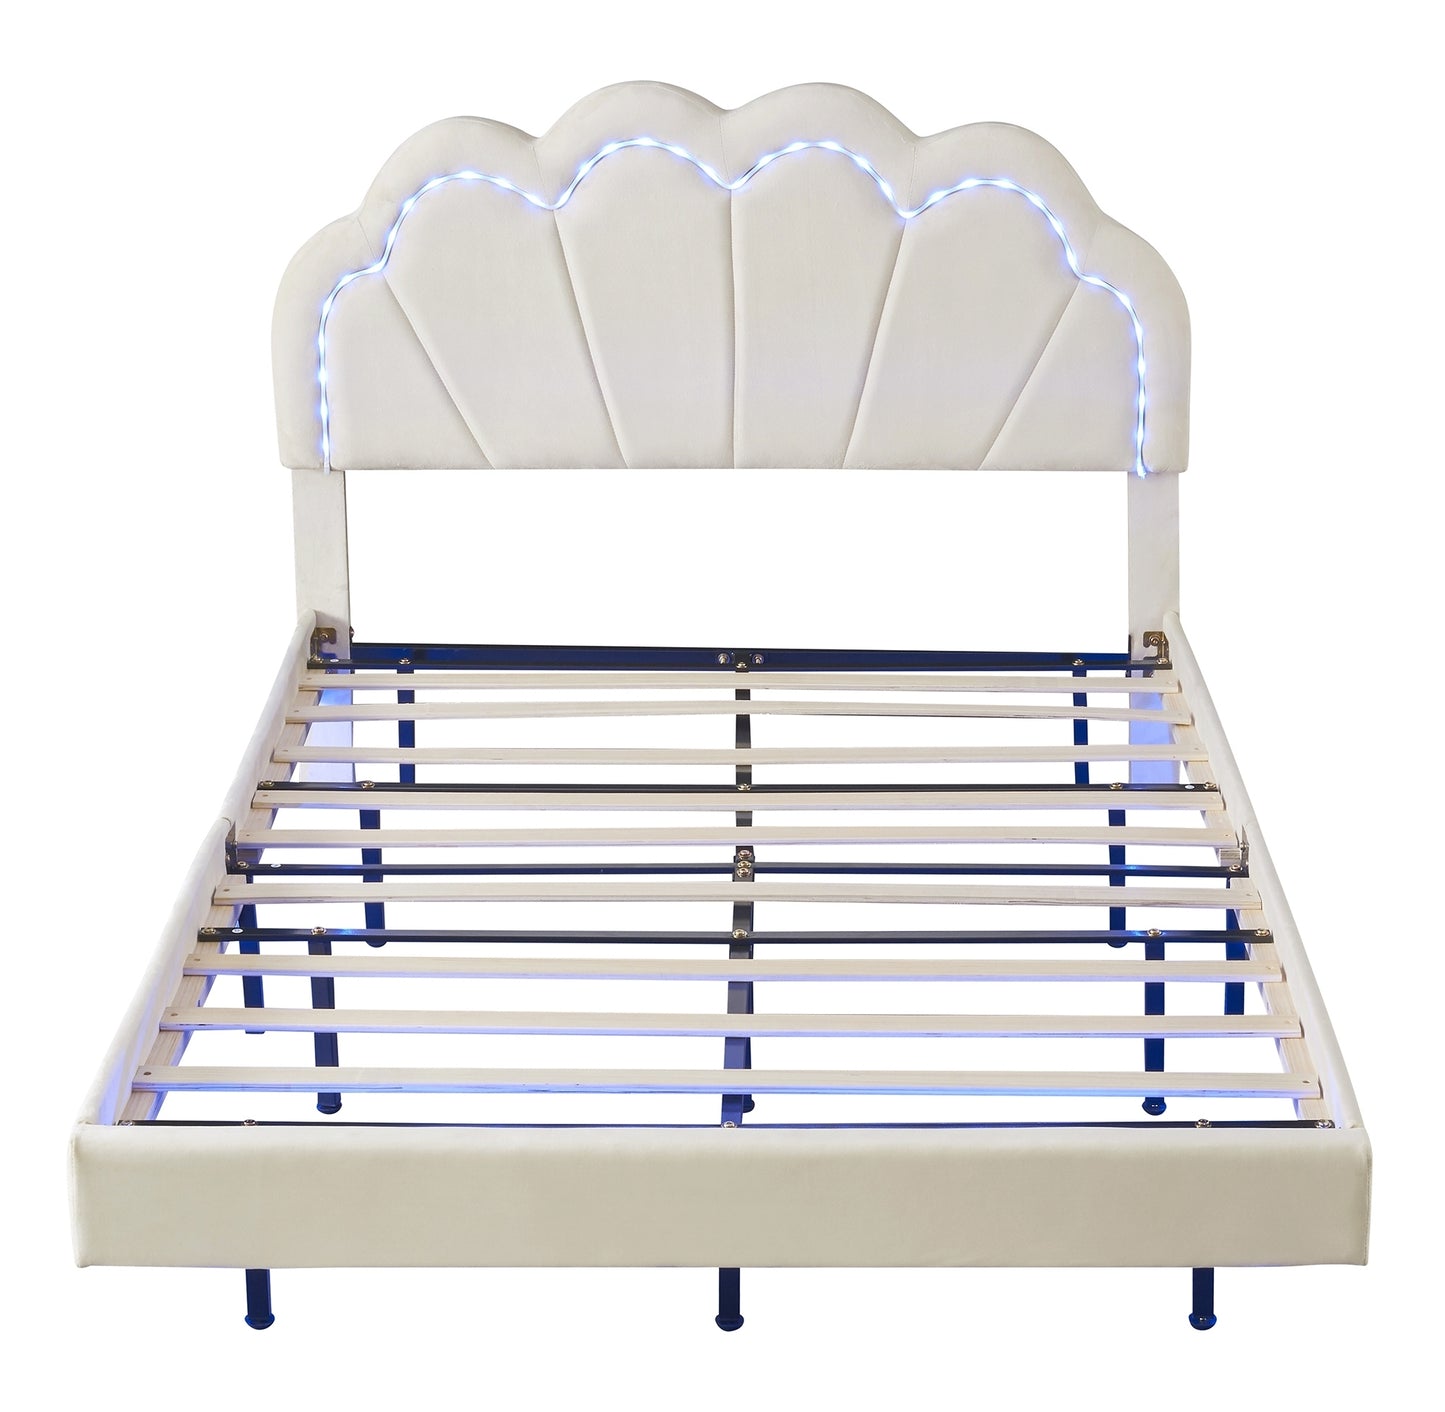 Full Upholstered Smart LED Bed Frame with Elegant Flowers Headboard,Floating Velvet Platform LED Bed with Wooden Slats Support,Beige